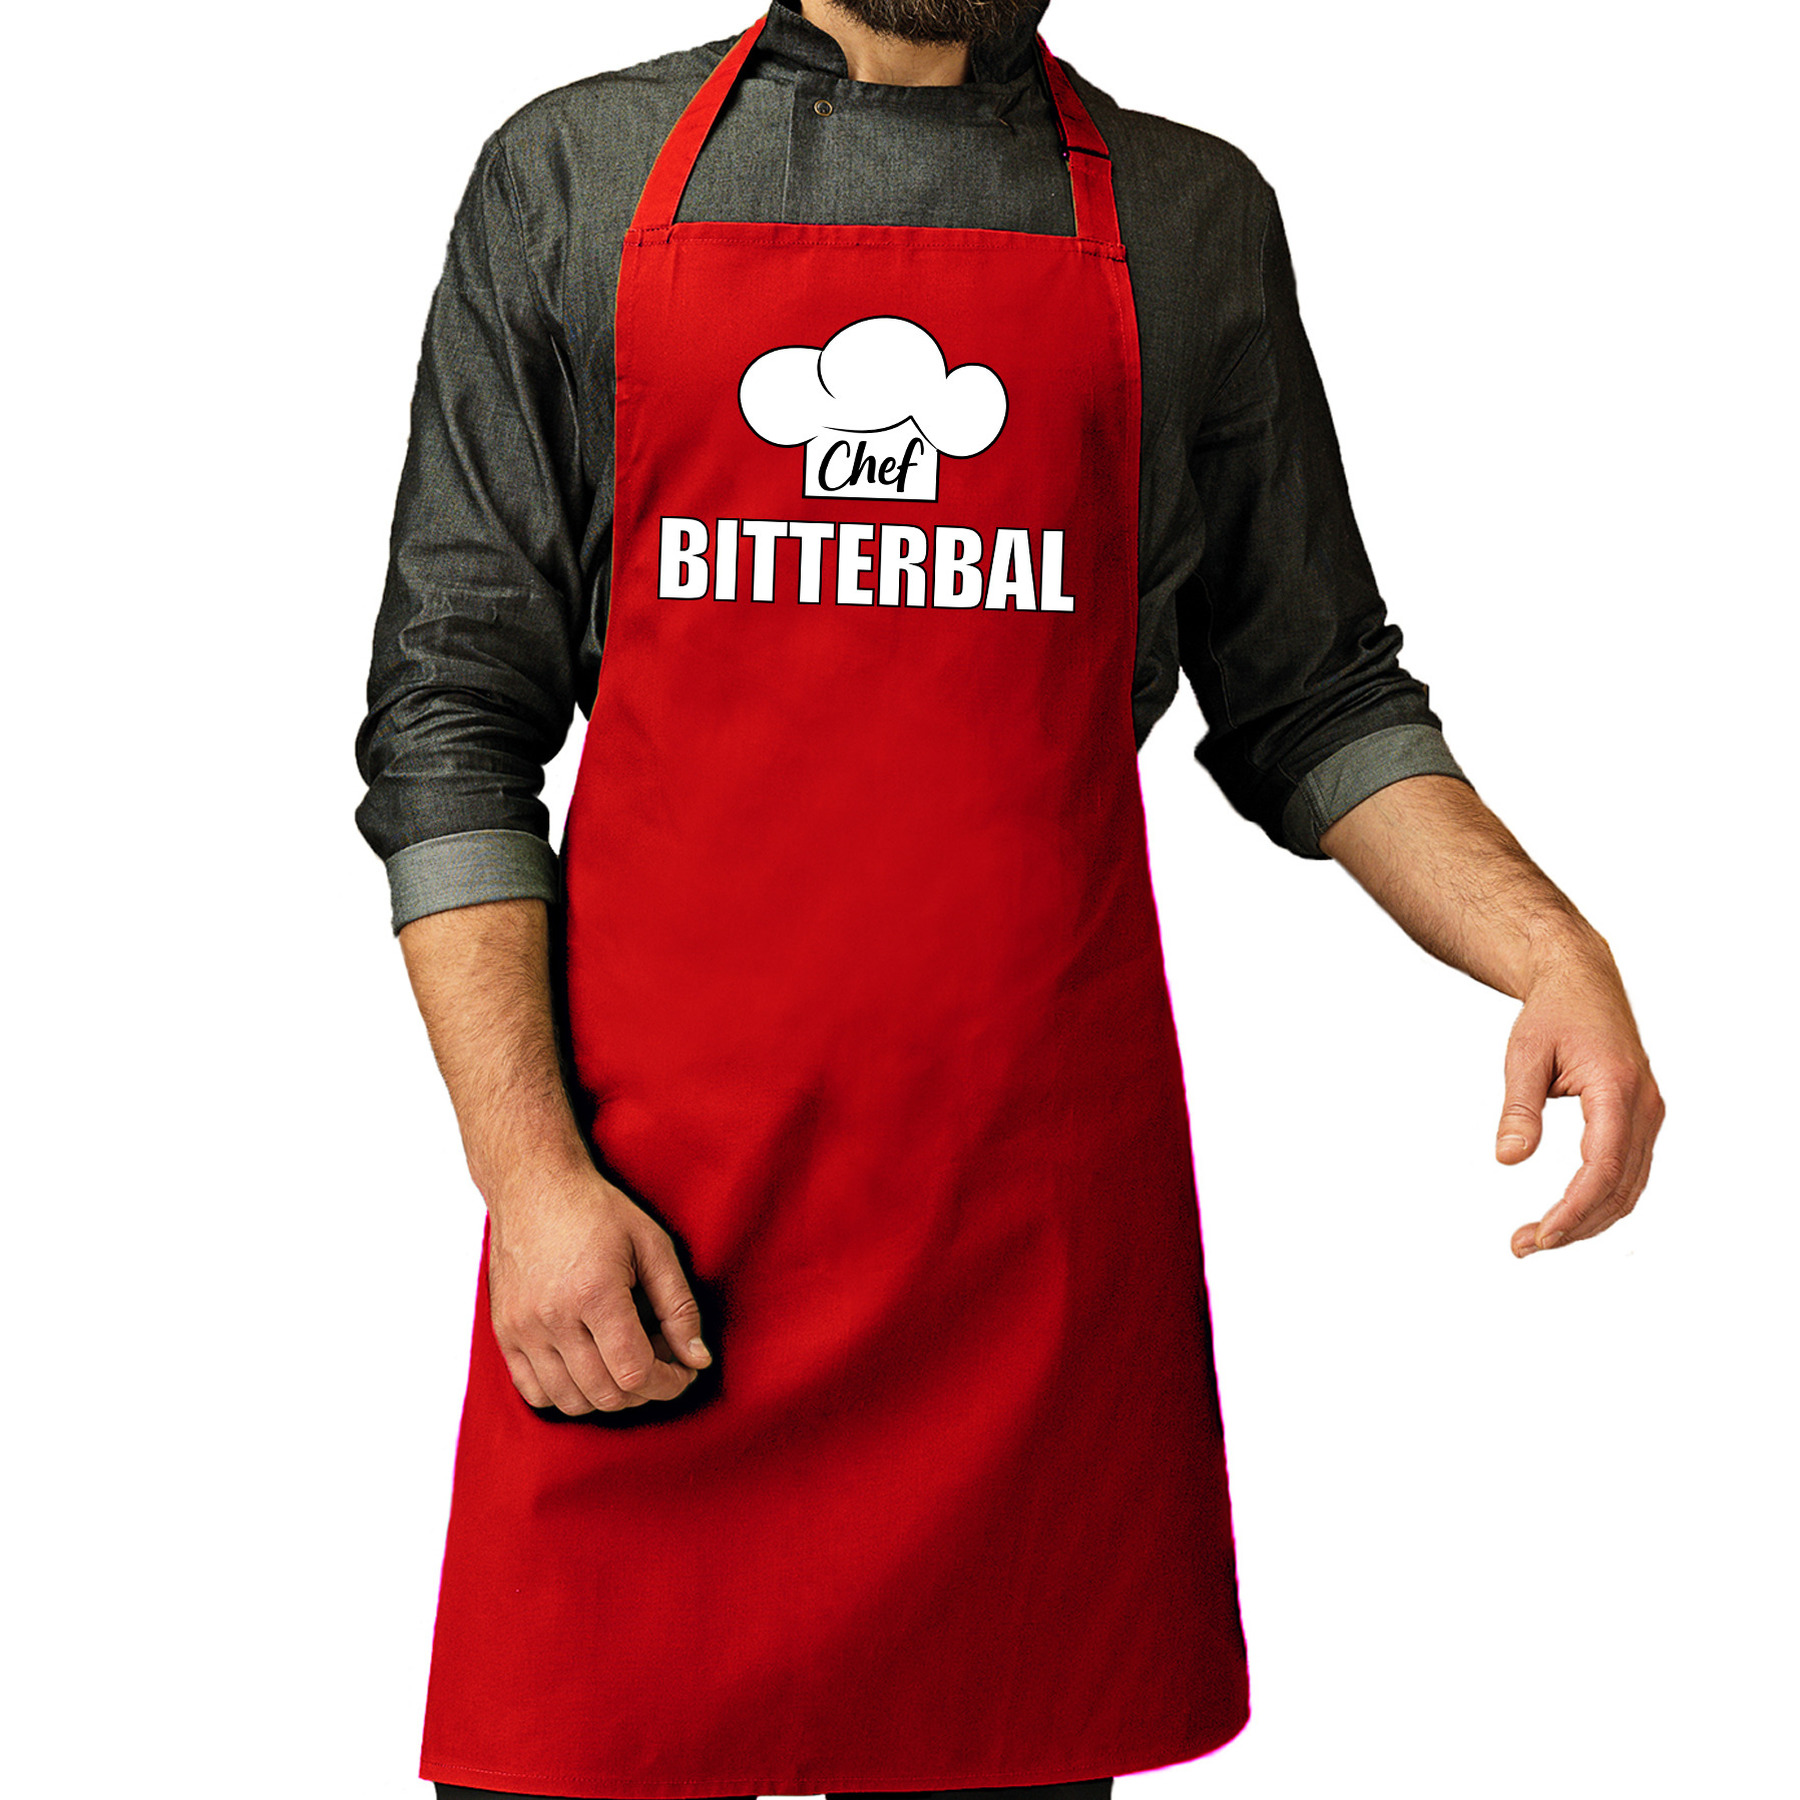 Chef bitterbal schort - keukenschort rood heren